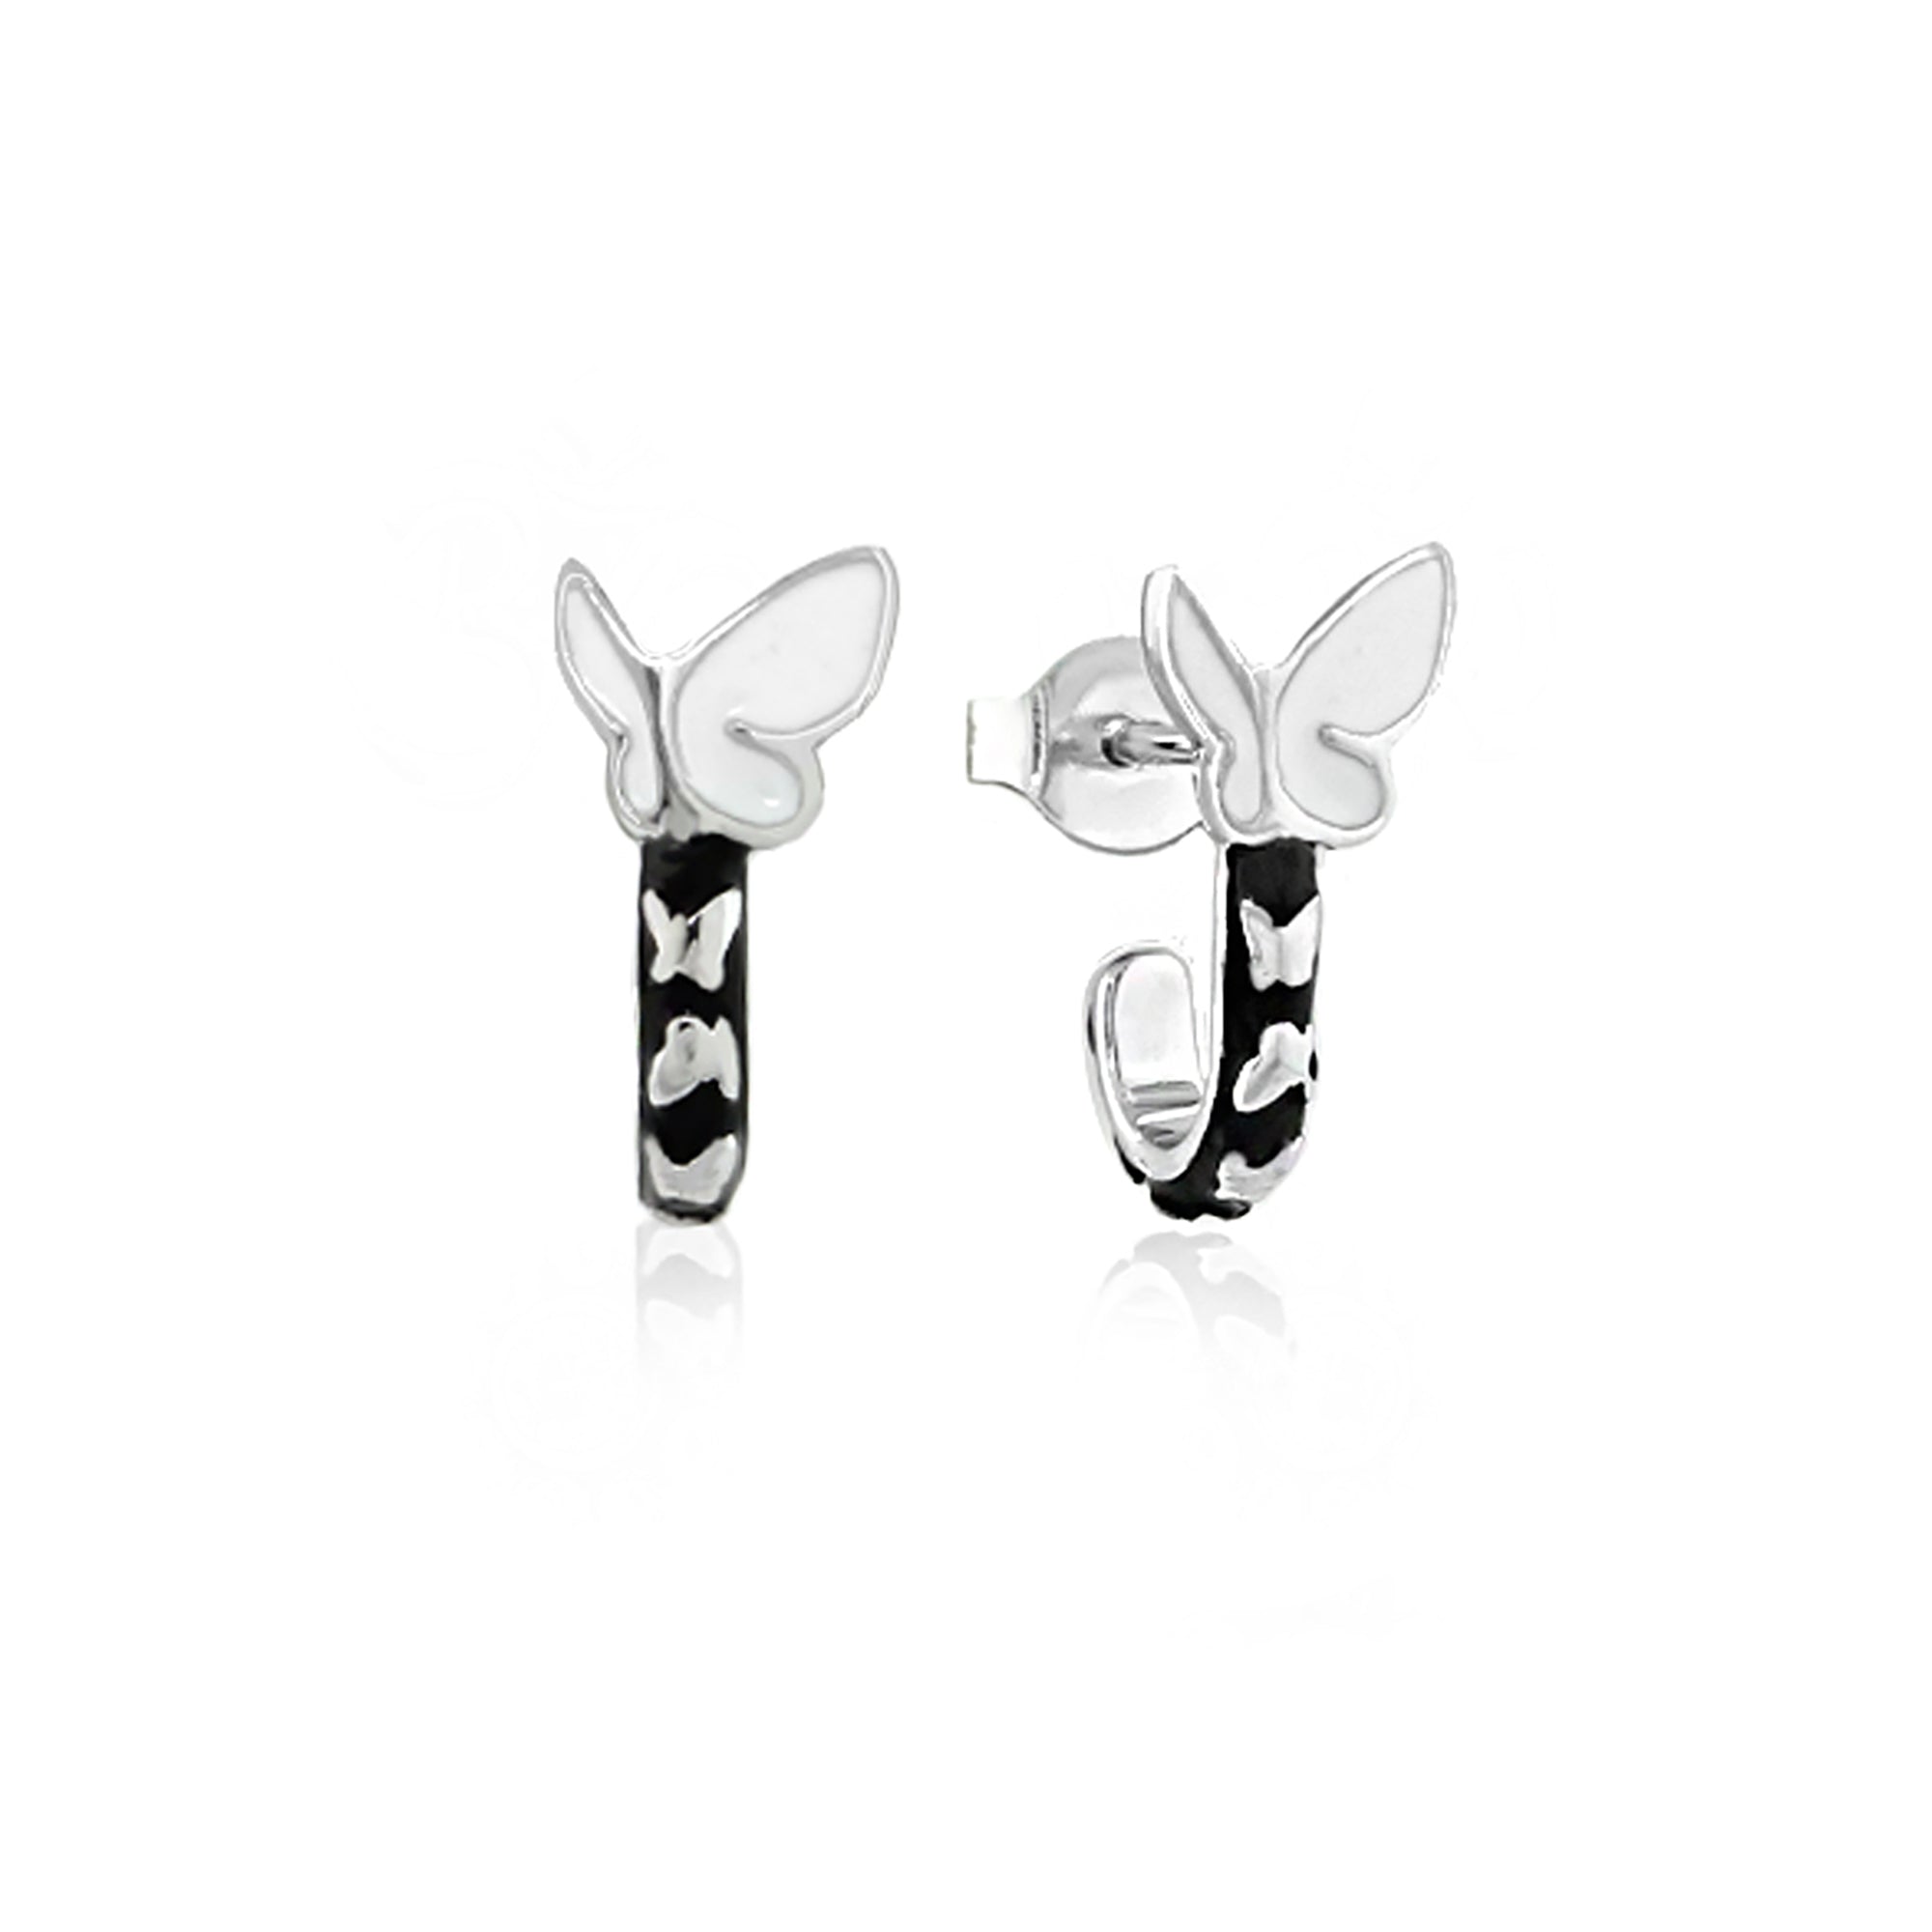 Sydney Leigh Butterfly Earrings